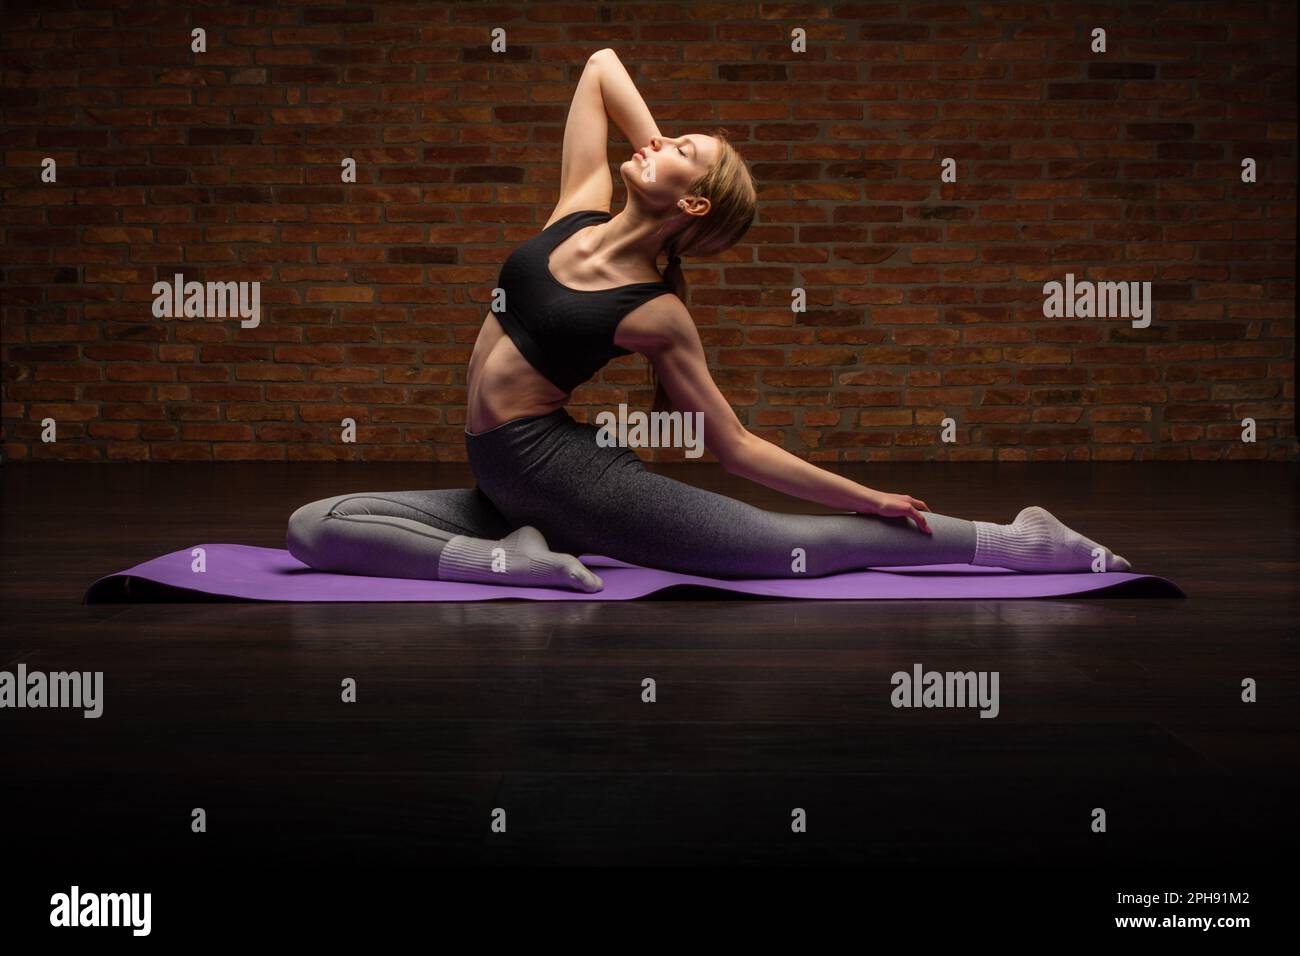 Sportliche junge Frau, die Yoga macht. Konzept des gesunden Lebens und des natürlichen Gleichgewichts zwischen körperlicher und mentaler Entwicklung Stockfoto